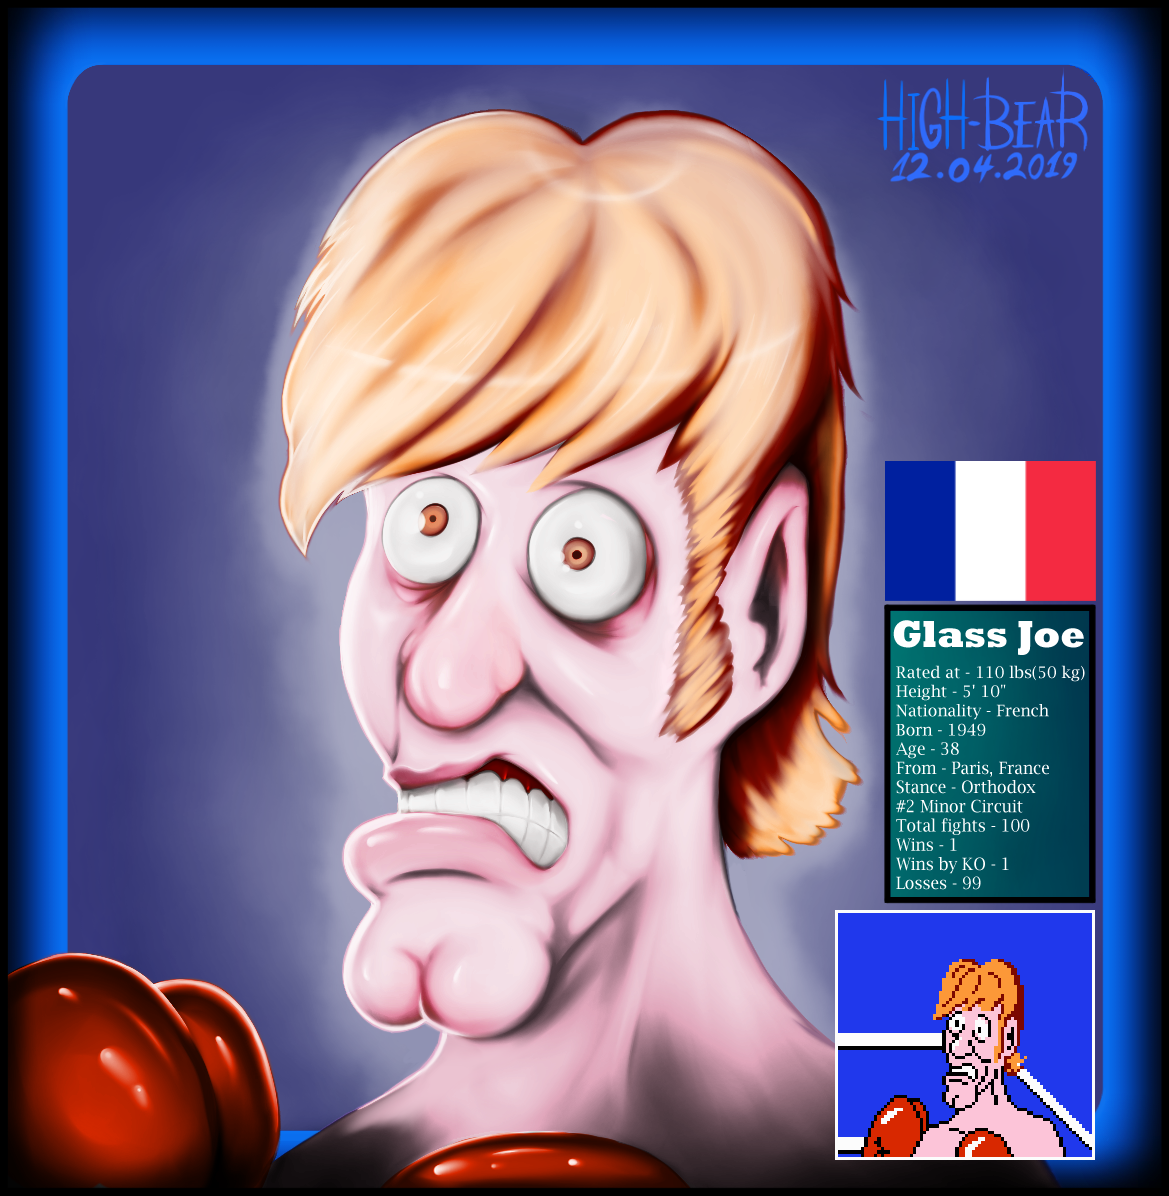 Punch Out - Glass Joe (info) by High-Bear on DeviantArt